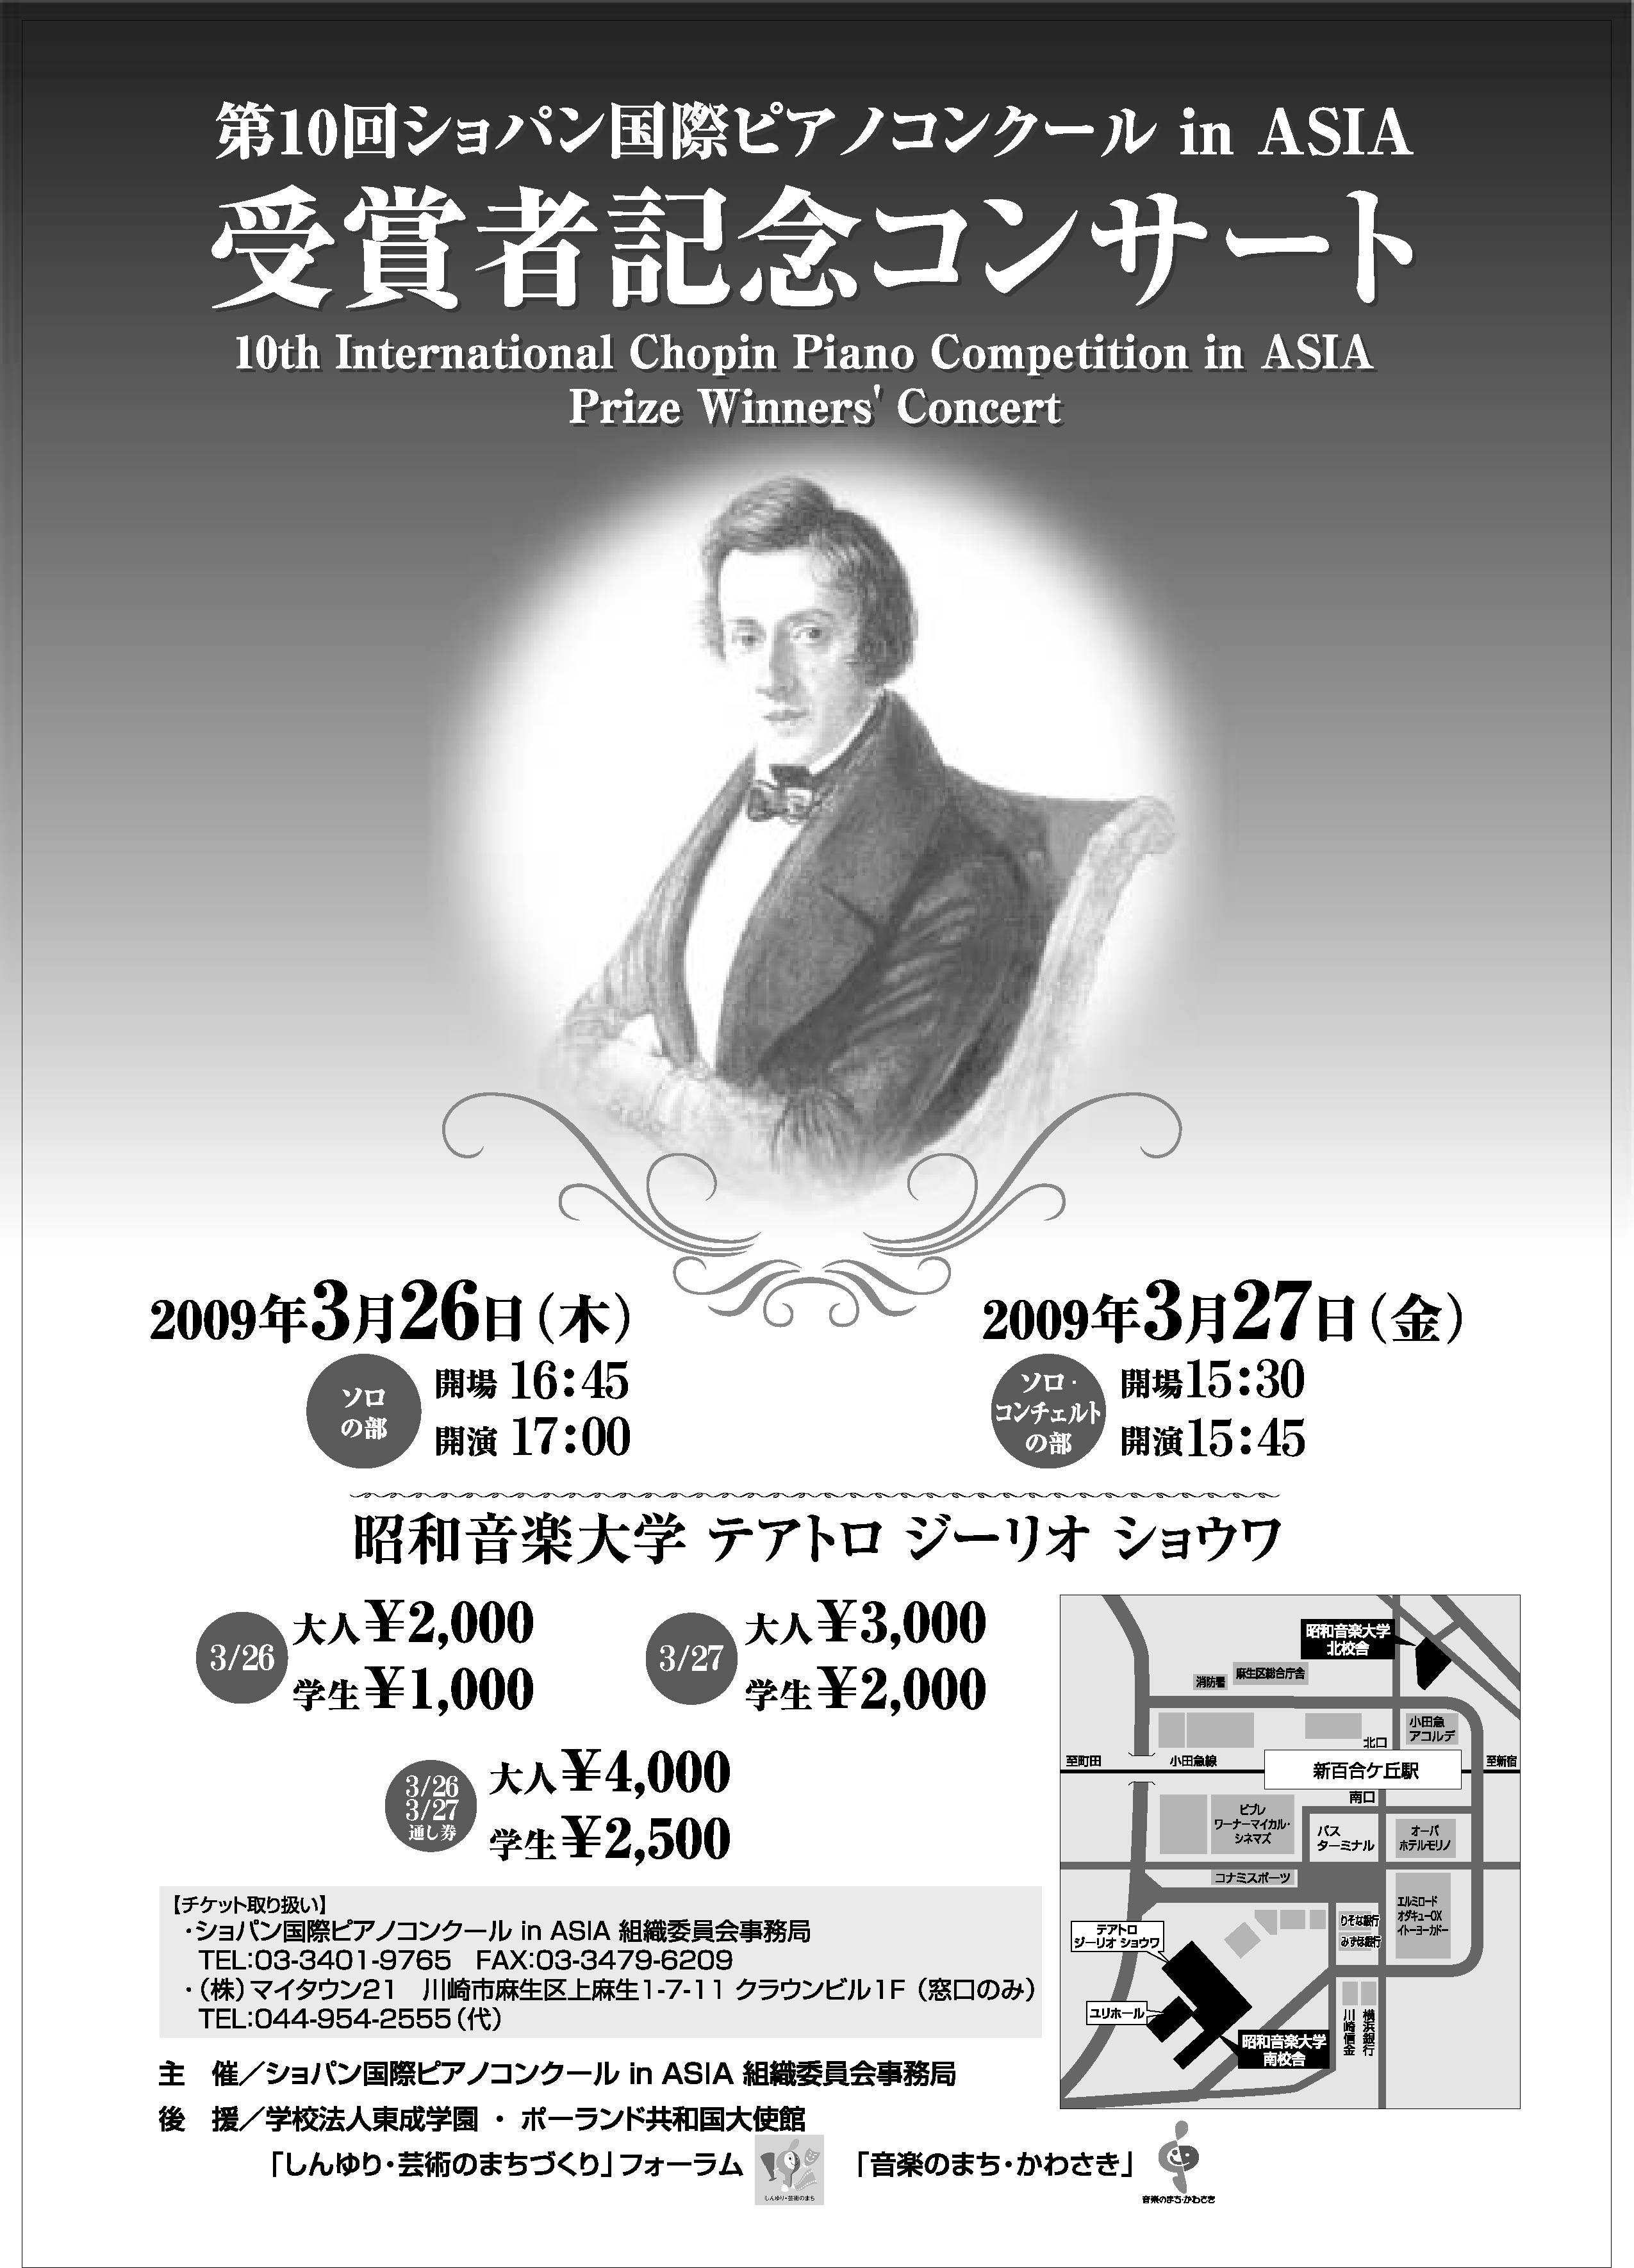 ショパン 国際 ピアノ コンクール in asia